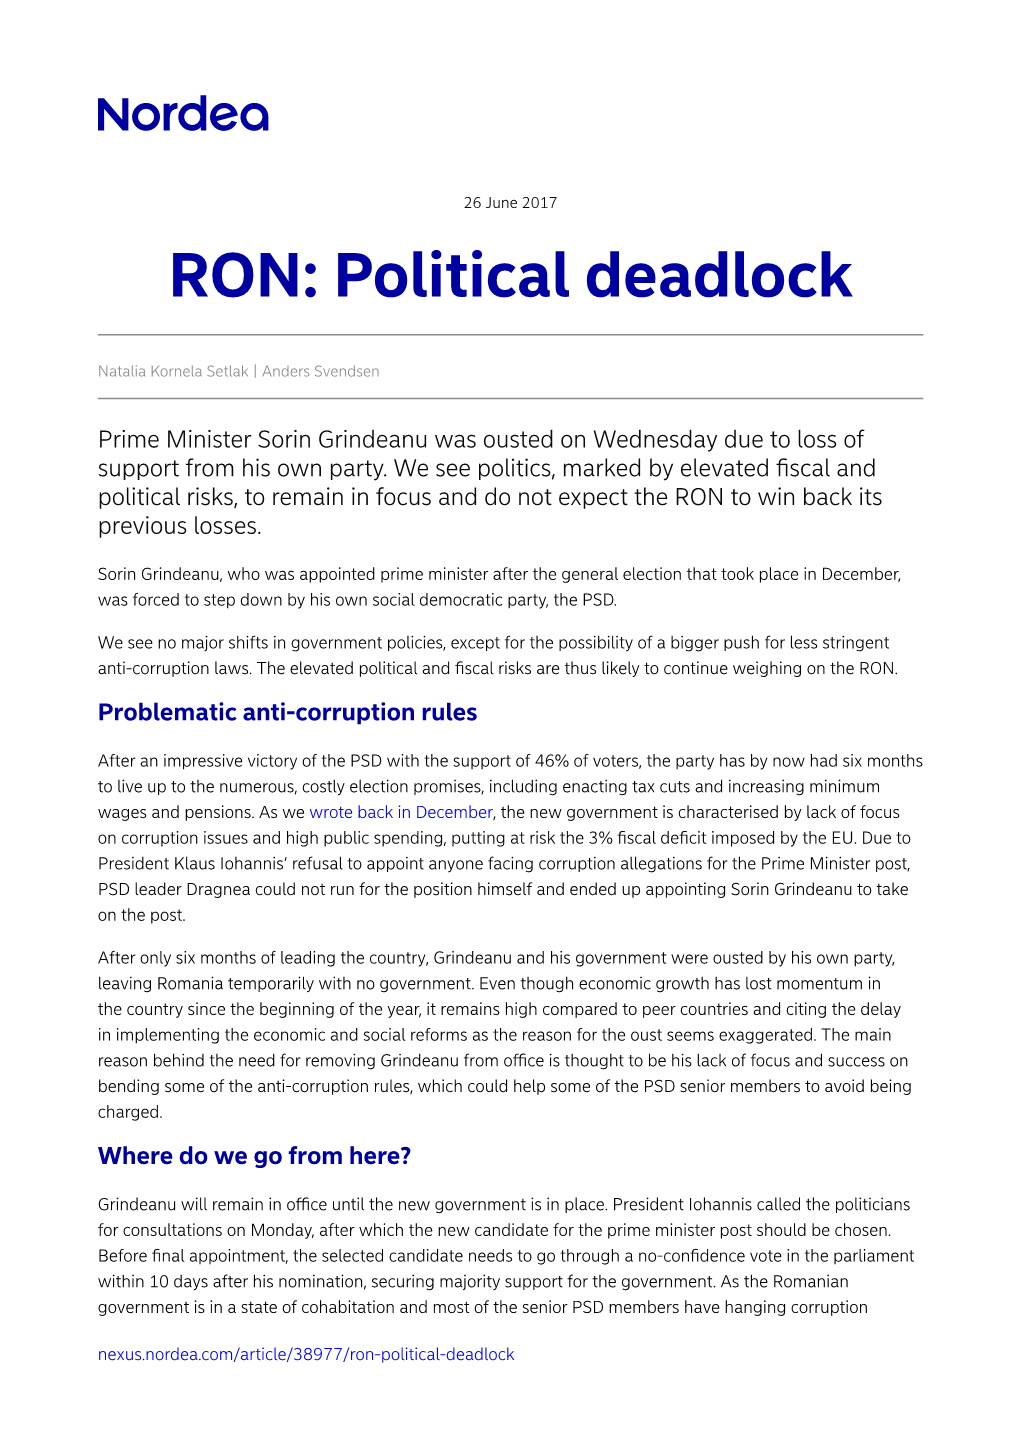 RON: Political Deadlock